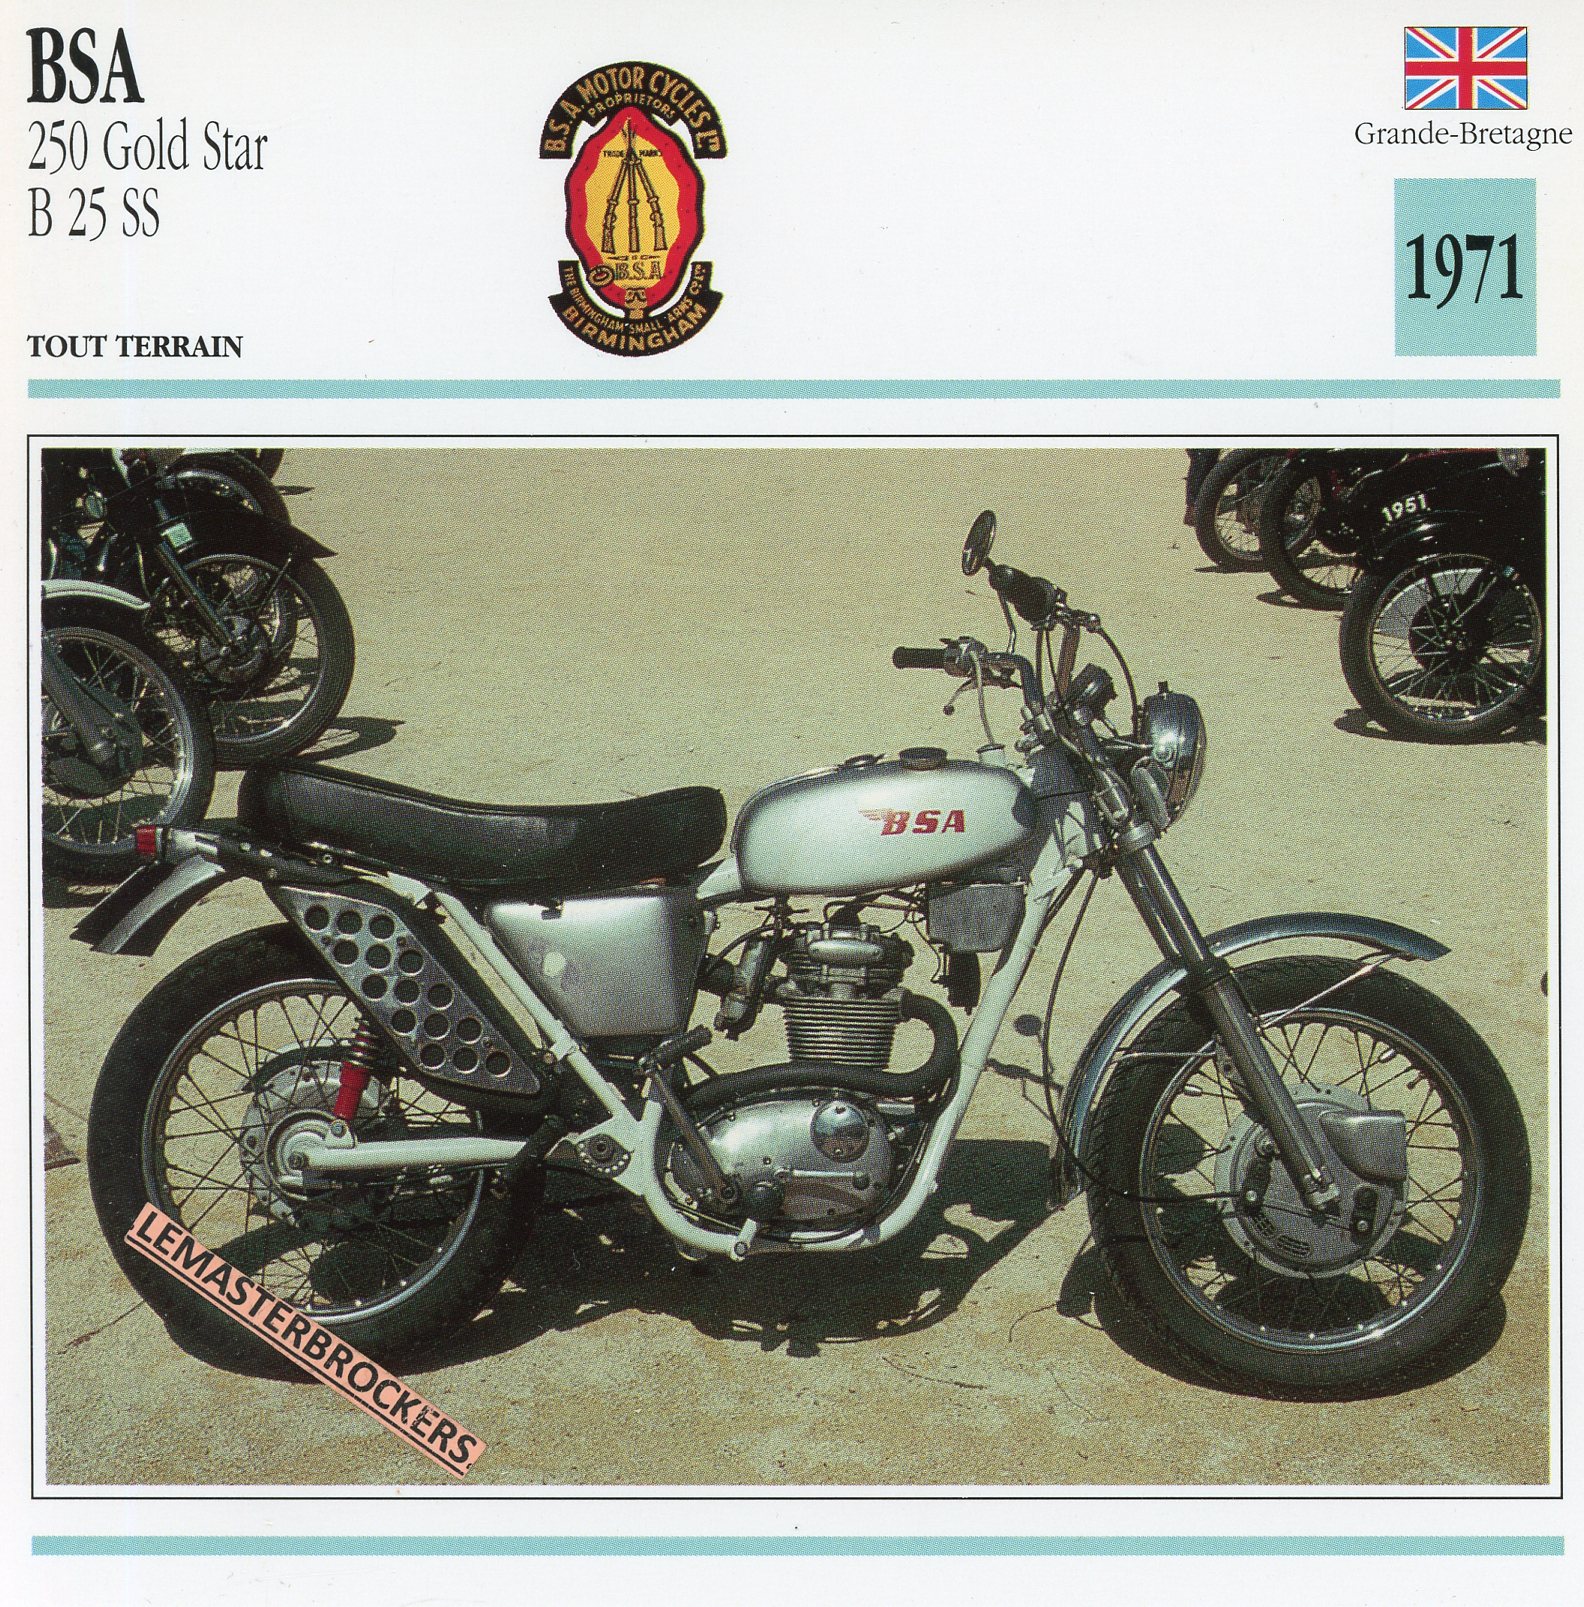 BSA-250-GOLD-STAR-B25SS-1971-FICHE-MOTO-CARDS-ATLAS-LEMASTERBROCKERS